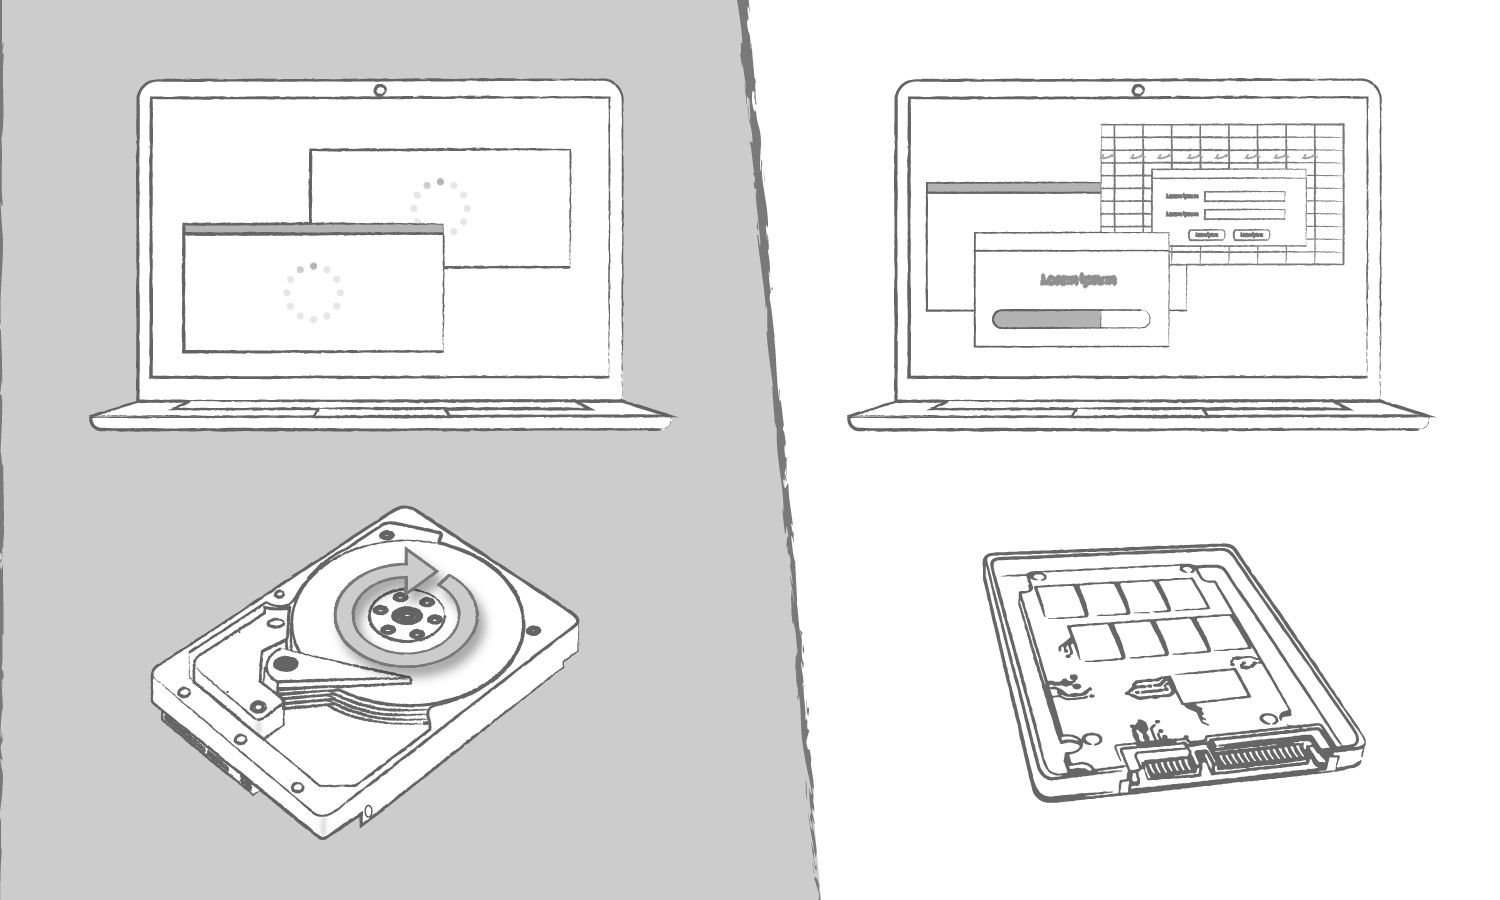 Ilustración que muestra los beneficios de una SSD en comparación con un disco duro considerando los tiempos de carga de programas informáticos